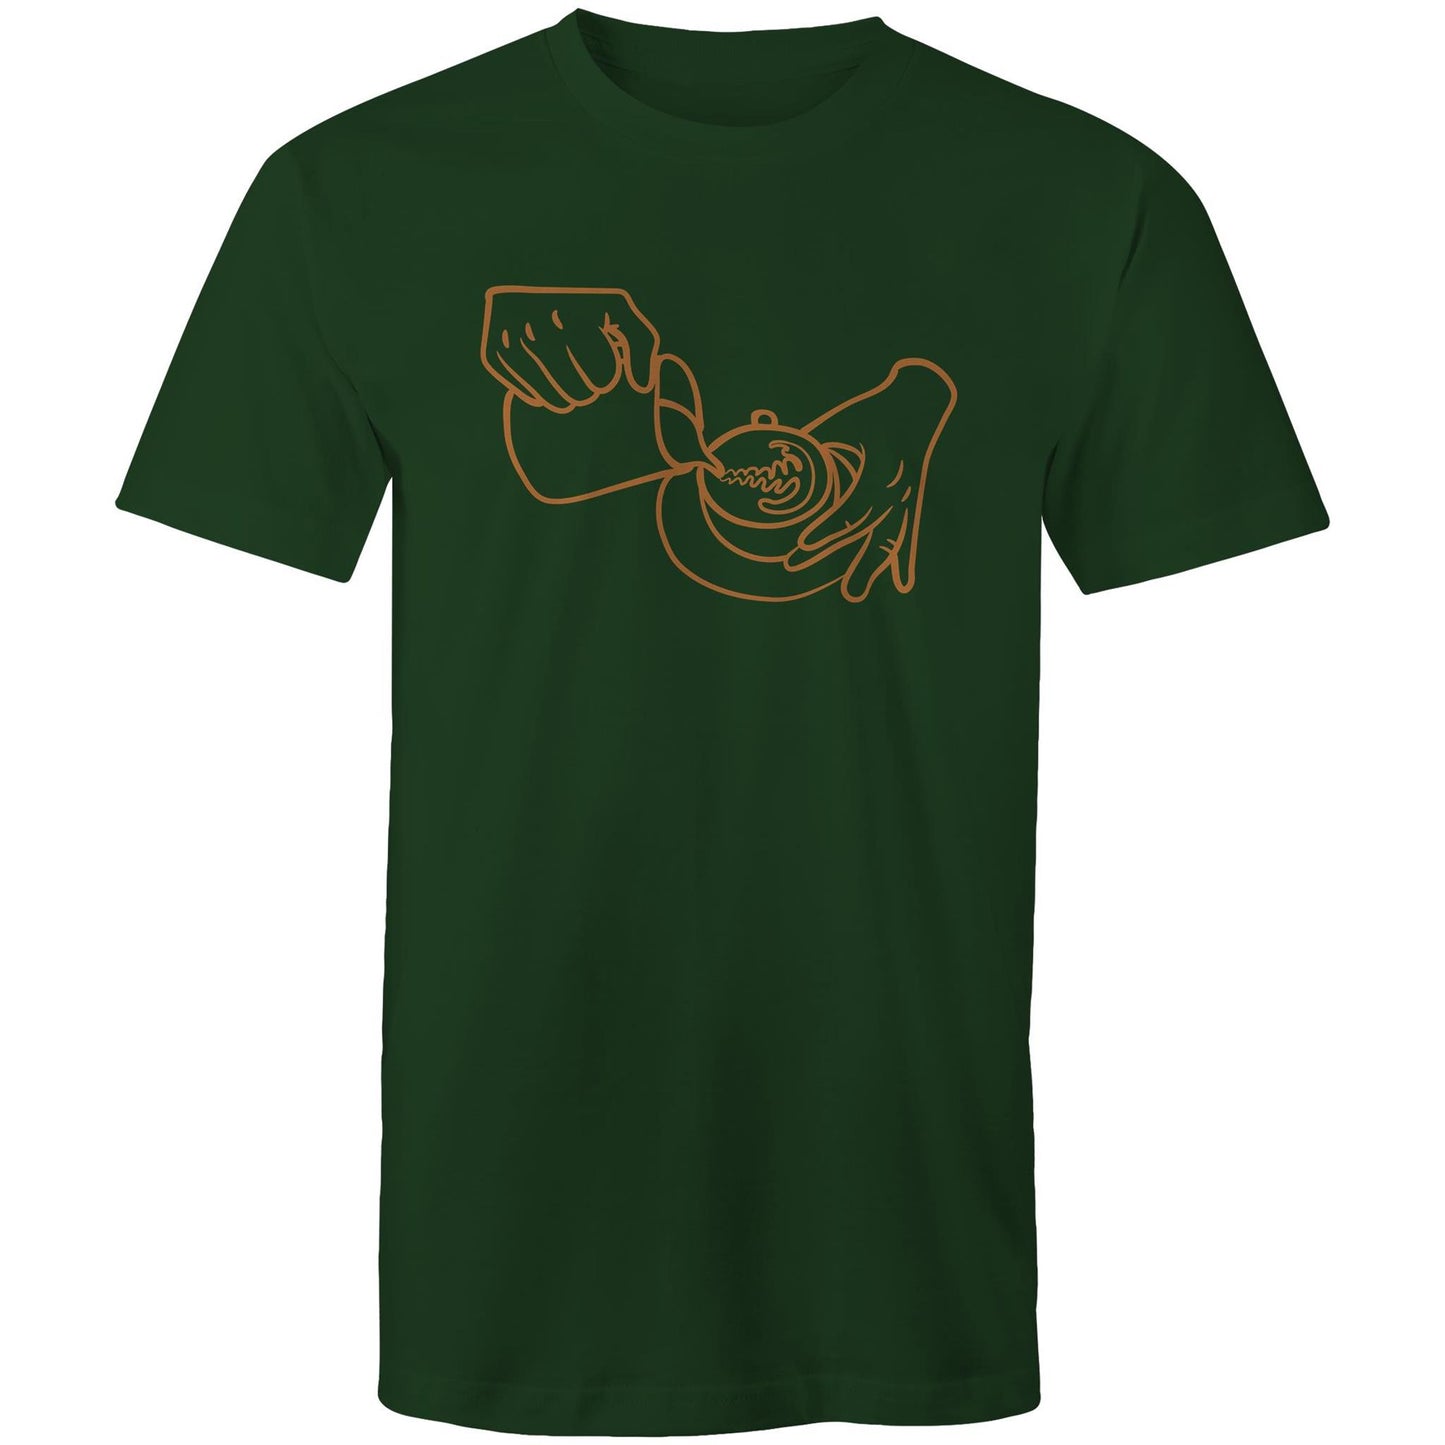 Barista - Mens T-Shirt Forest Green Mens T-shirt coffee